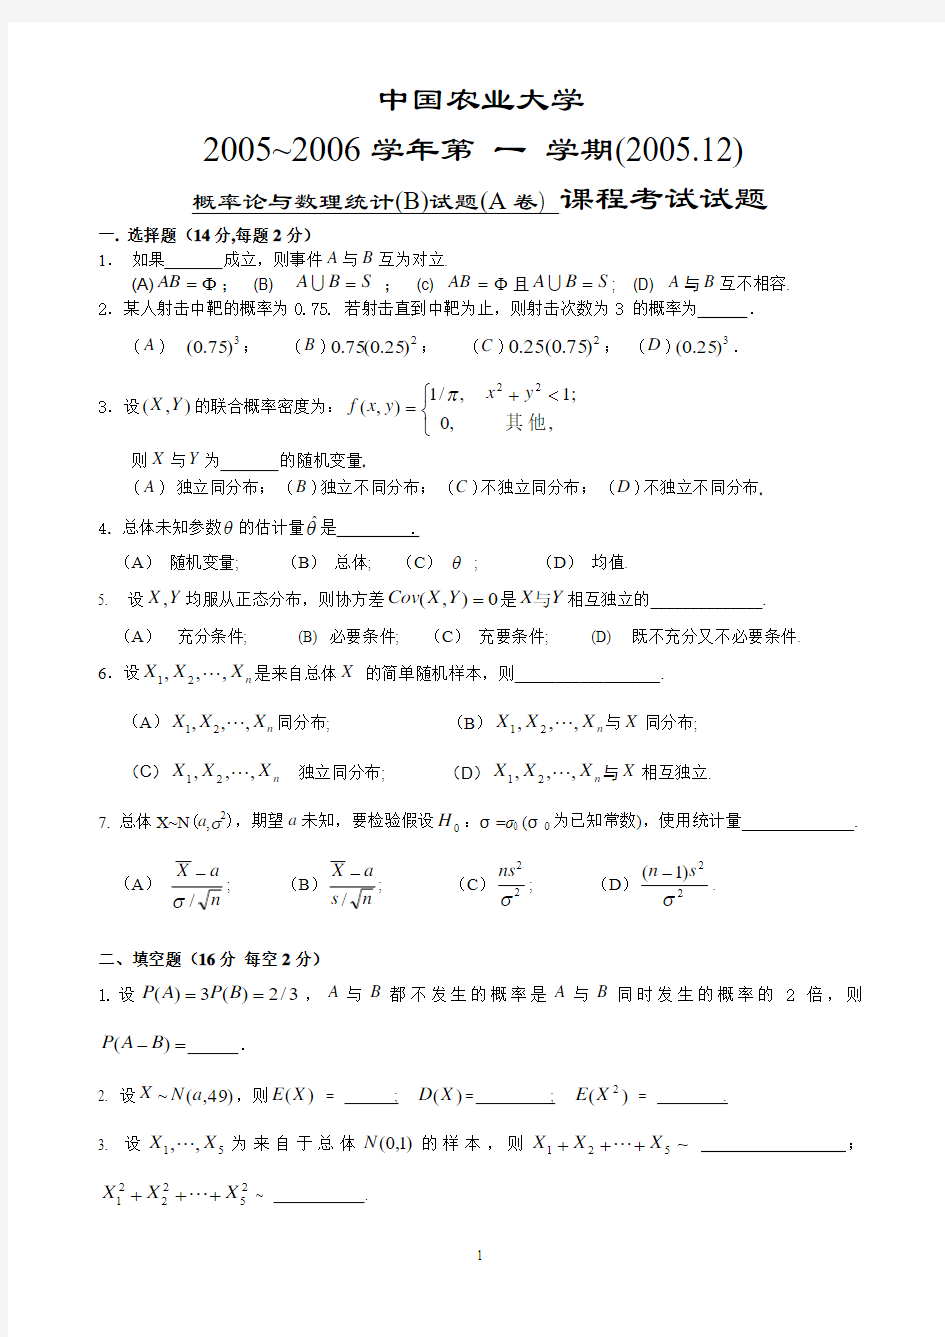 中国农业大学概率论与数理统计期末试题汇总(2005年到2012年)